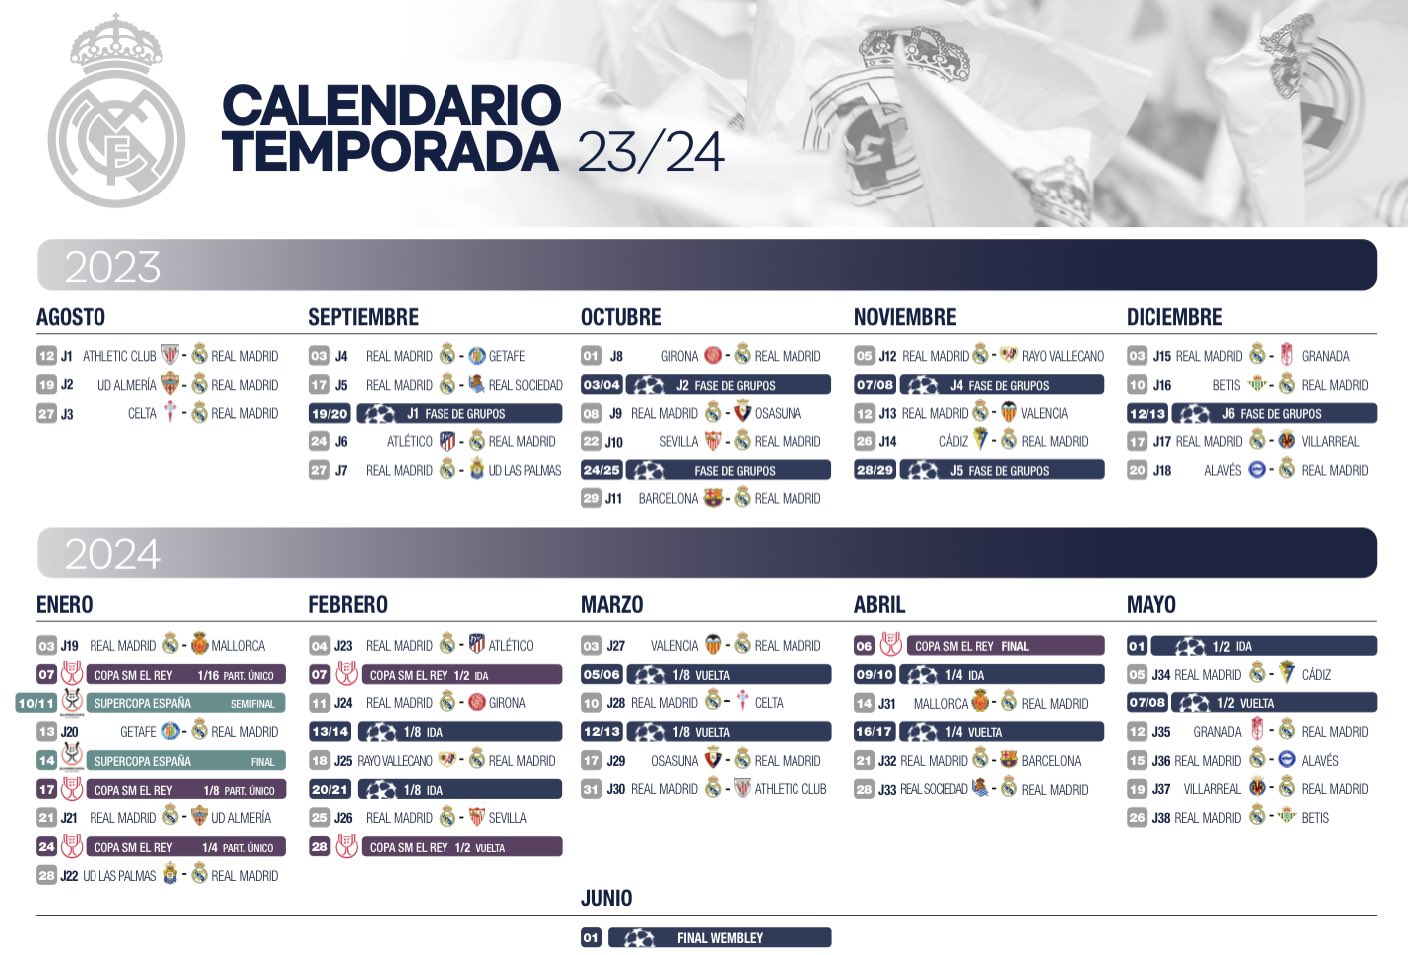 Calendario del real madrid temporada 23 24